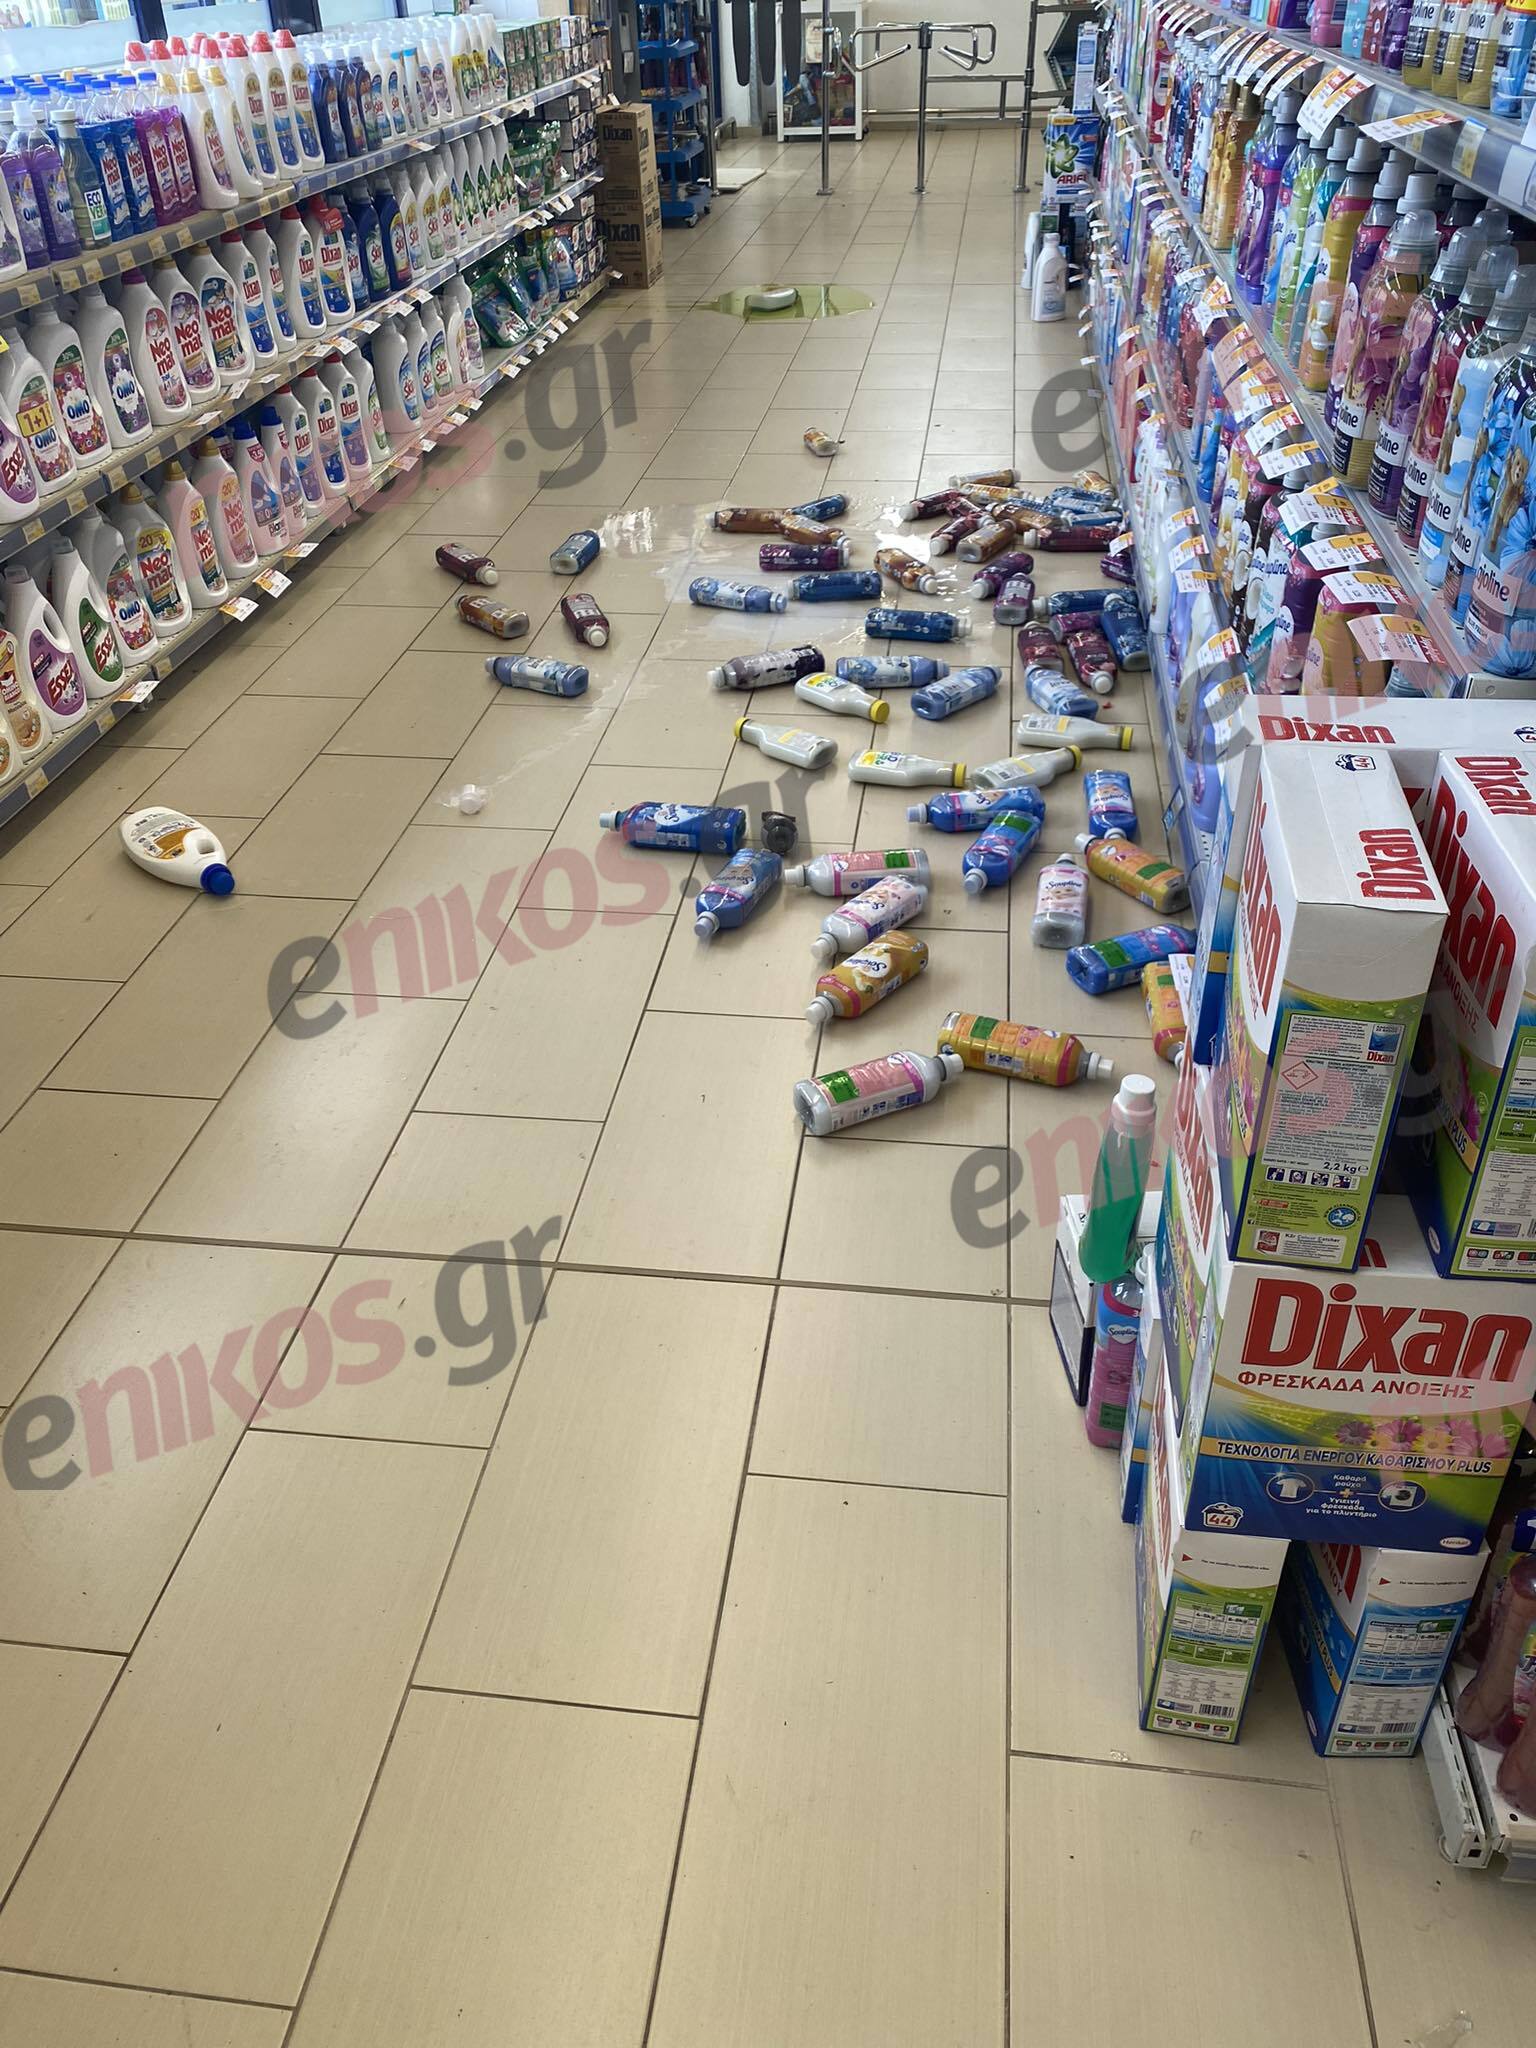 σούπερ μάρκετ σεισμός Μαντούδι  Σεισμός στην Εύβοια: Έπεσαν προϊόντα από τα ράφια σούπερ μάρκετ στο Μαντούδι – Έκλεισαν τα σχολεία mantoudi seismos3